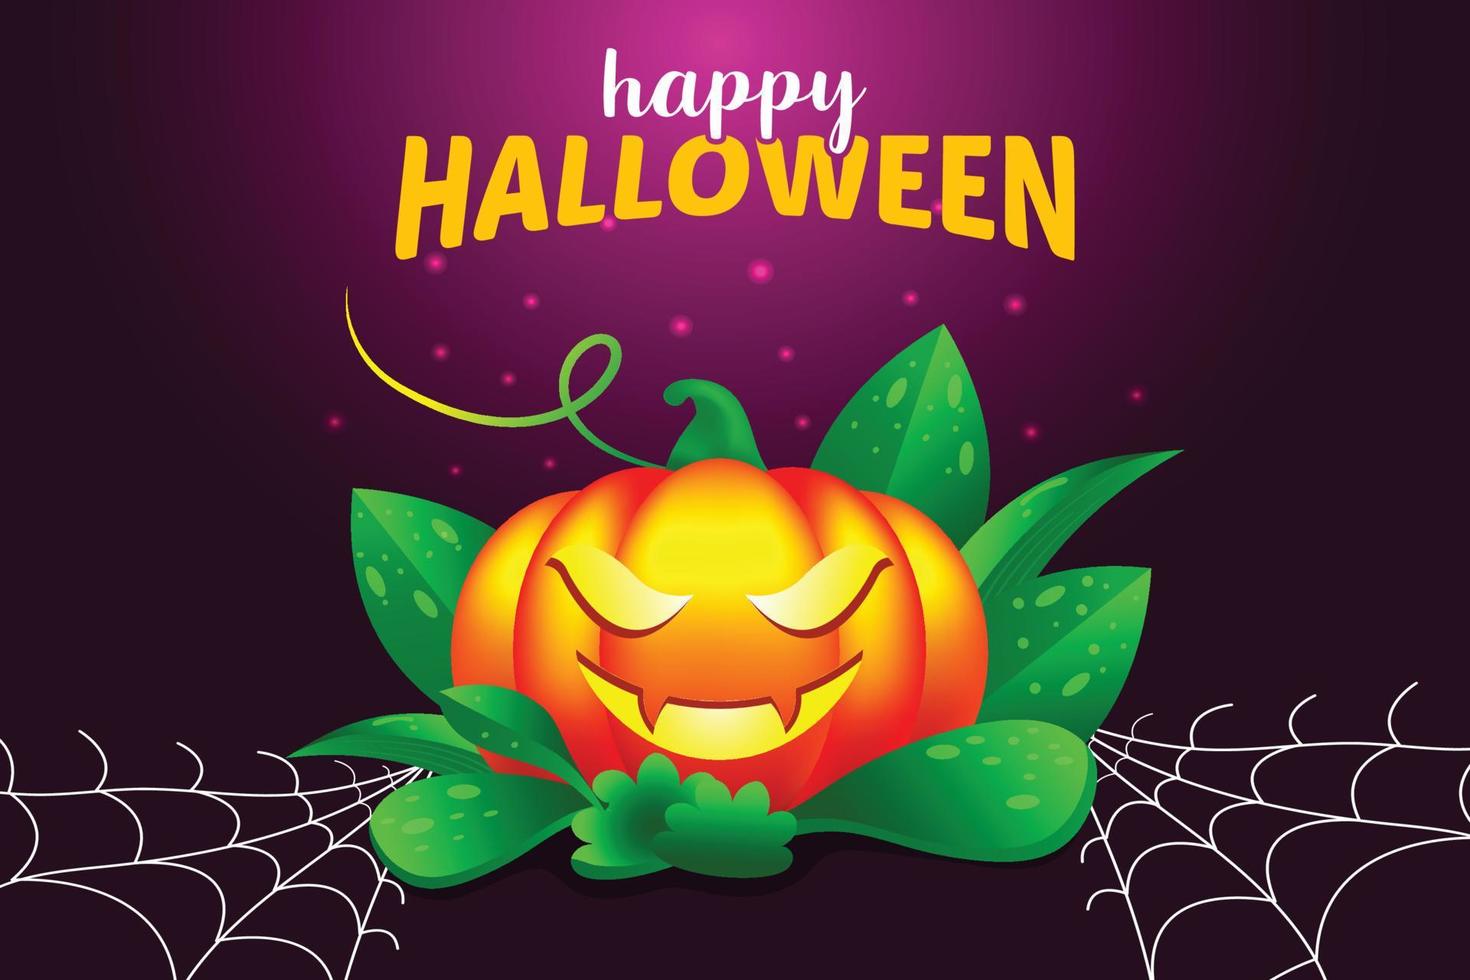 fond d'illustration vectorielle halloween heureux avec citrouille fantasmagorique, filet d'araignée, typographie. vecteur